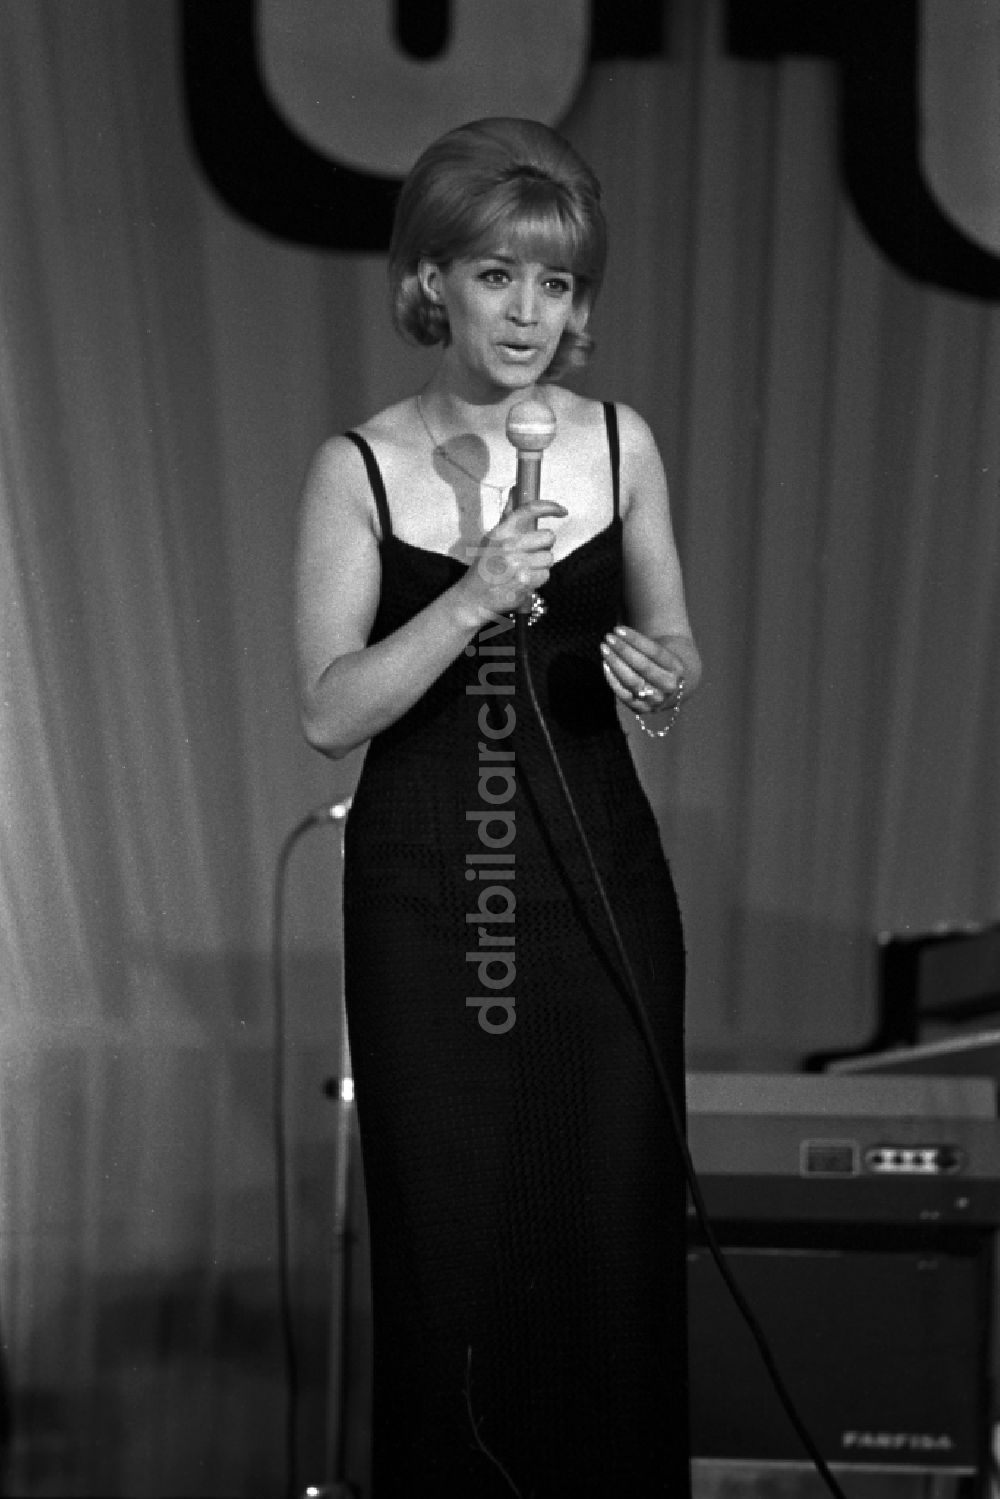 DDR-Bildarchiv: Magdeburg - Die schwedische Sängerin Lill-Babs (Barbro Margareta Svensson) bei einem Auftritt in Magdeburg in Sachsen - Anhalt